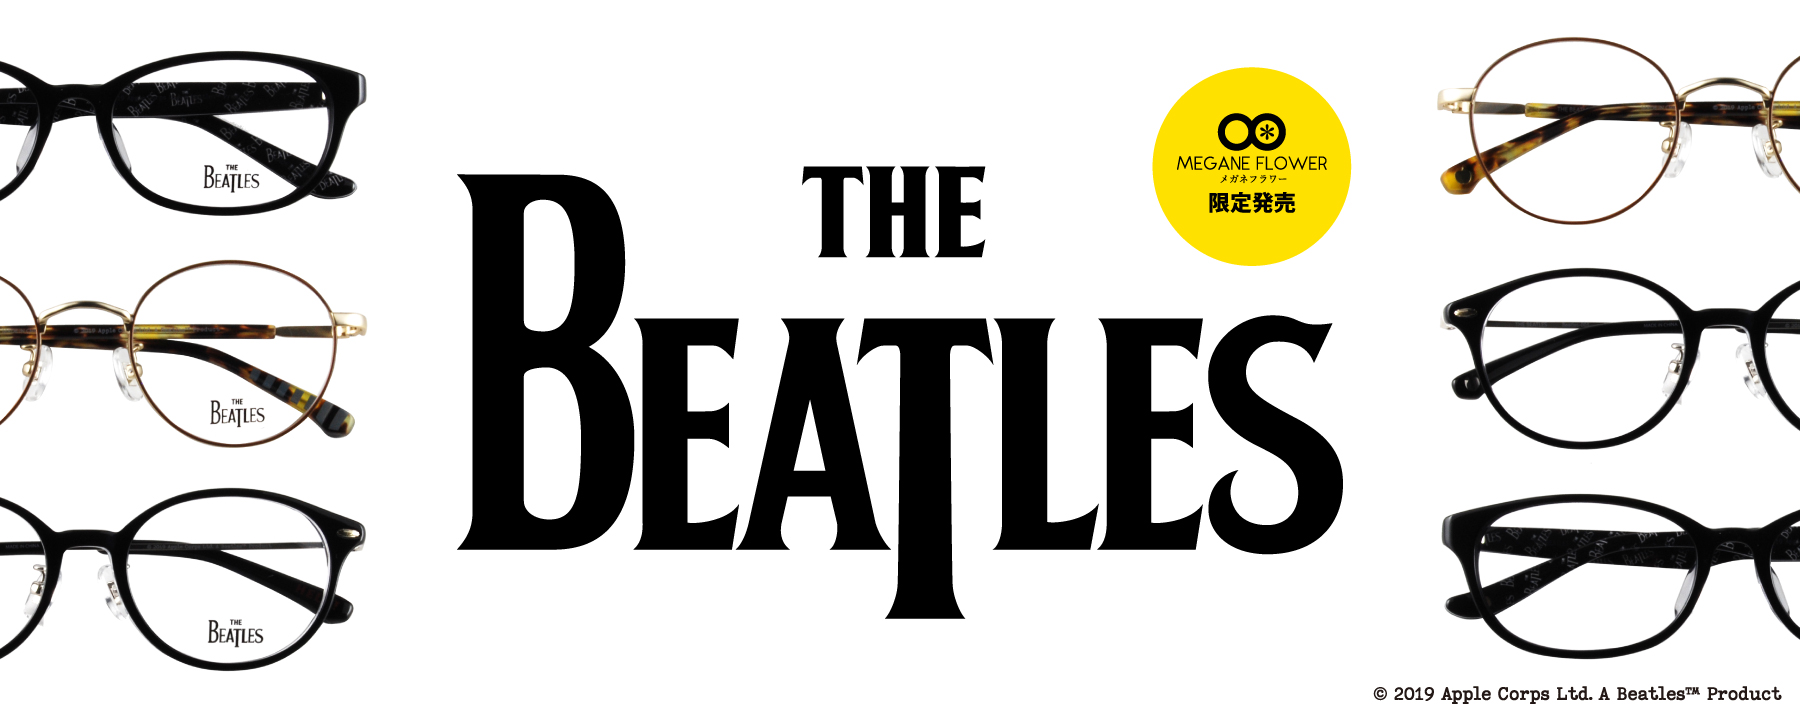 The Beatles ビートルズ Abbey Road 発売50周年記念 初のアイウェアコレクション発売 株式会社メガネフラワーのプレスリリース